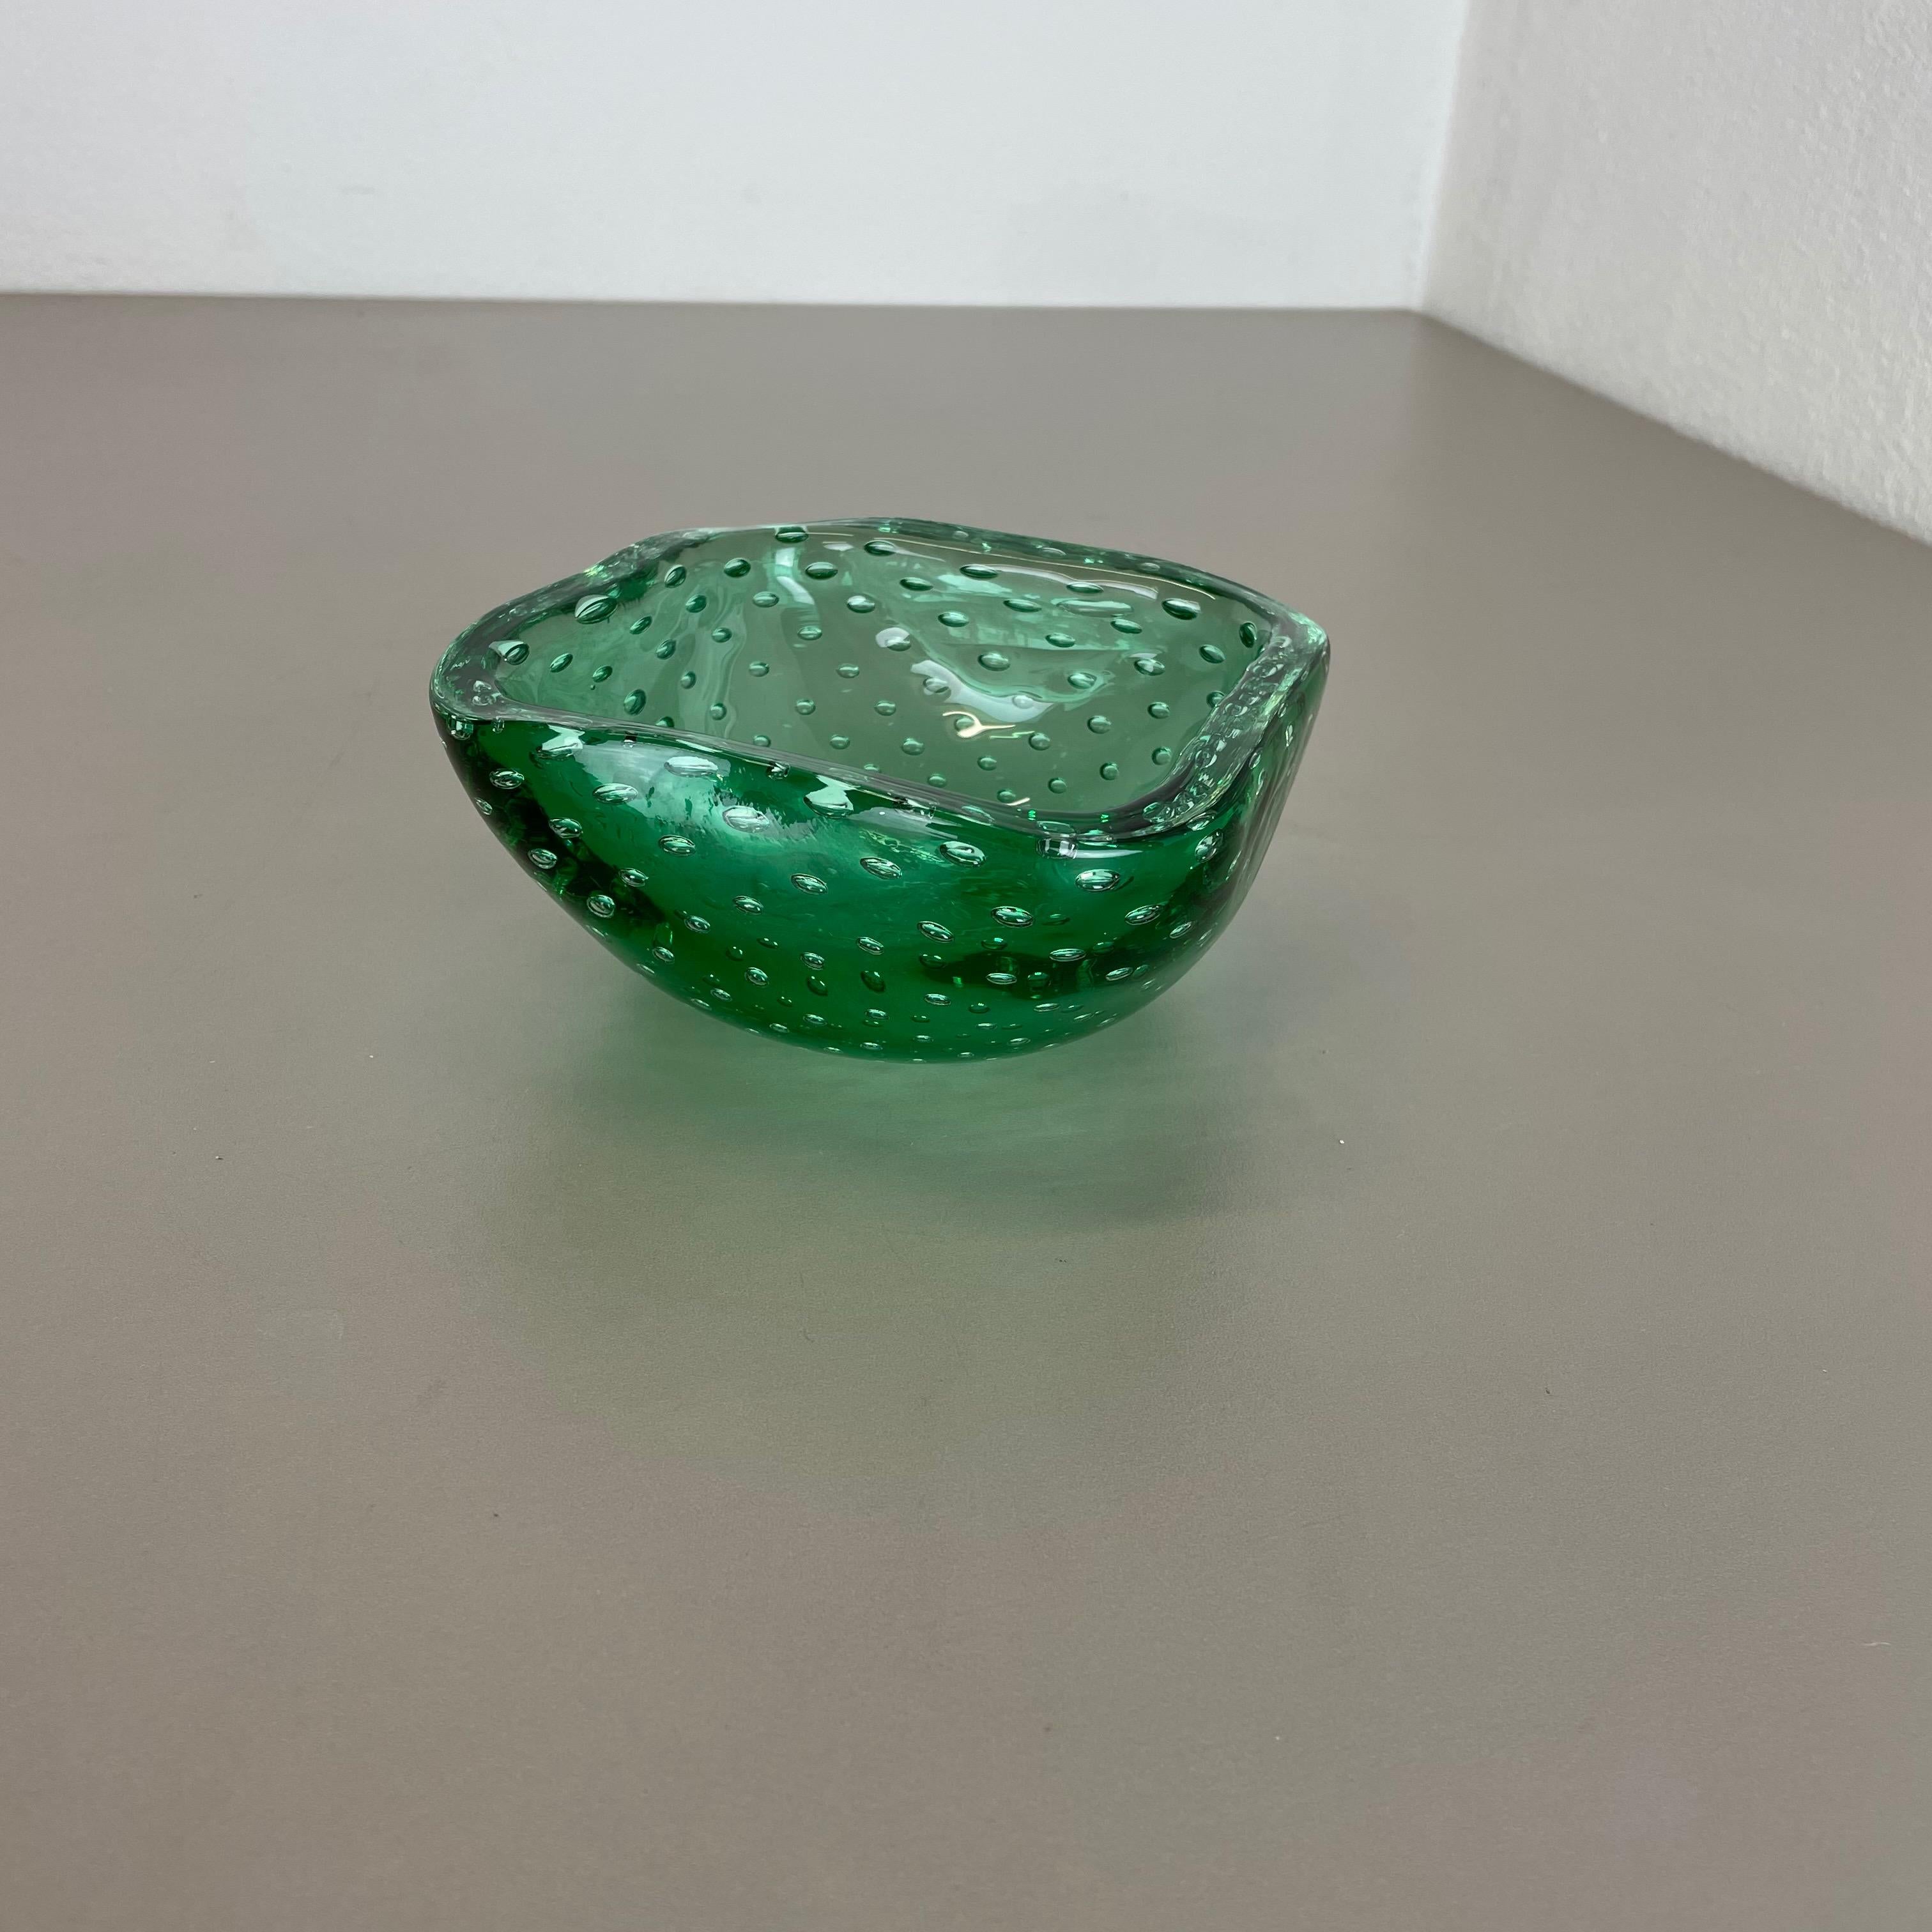 Artikel:

Muranoglasschale, Aschenbecher-Element


Herkunft:

Murano, Italien


Jahrzehnt:

1970s


Diese originelle Muschelschale aus Glas wurde in den 1970er Jahren in Murano, Italien, hergestellt. Ein elegantes grünes Element aus